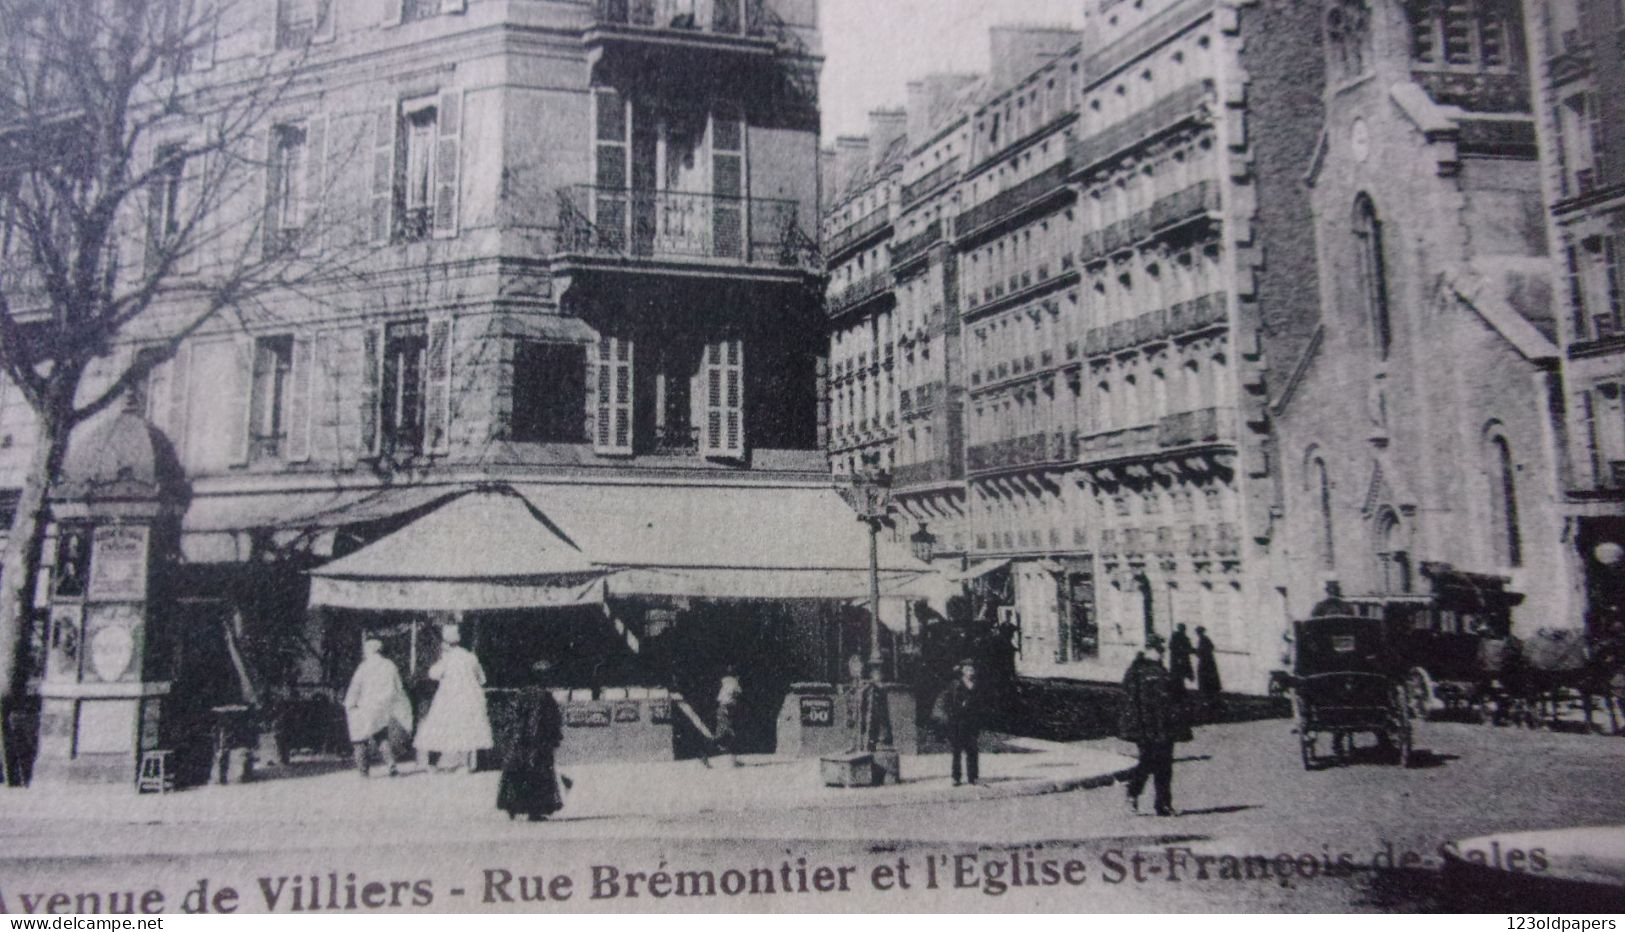 PARIS 17  EME AVENUE DE VILLIERS RUE BREMONTIER EGLISE  FRANCOIS DE SALES 1929 CALECHES - Distretto: 17